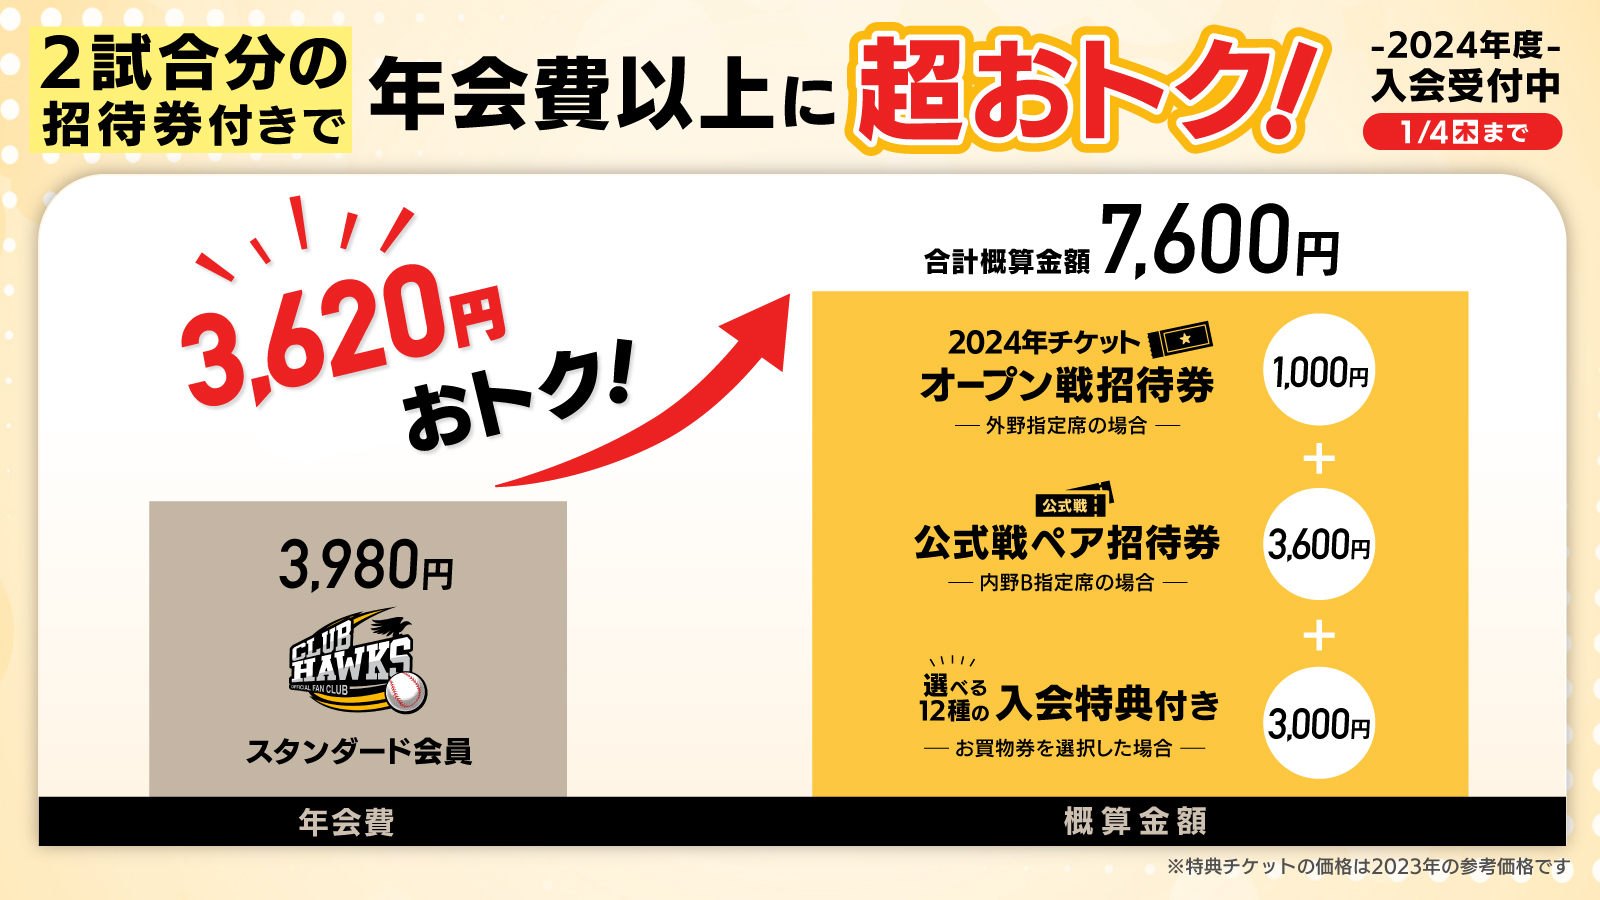 福岡ソフトバンクホークス クラブホークス特典のタカポイント6000